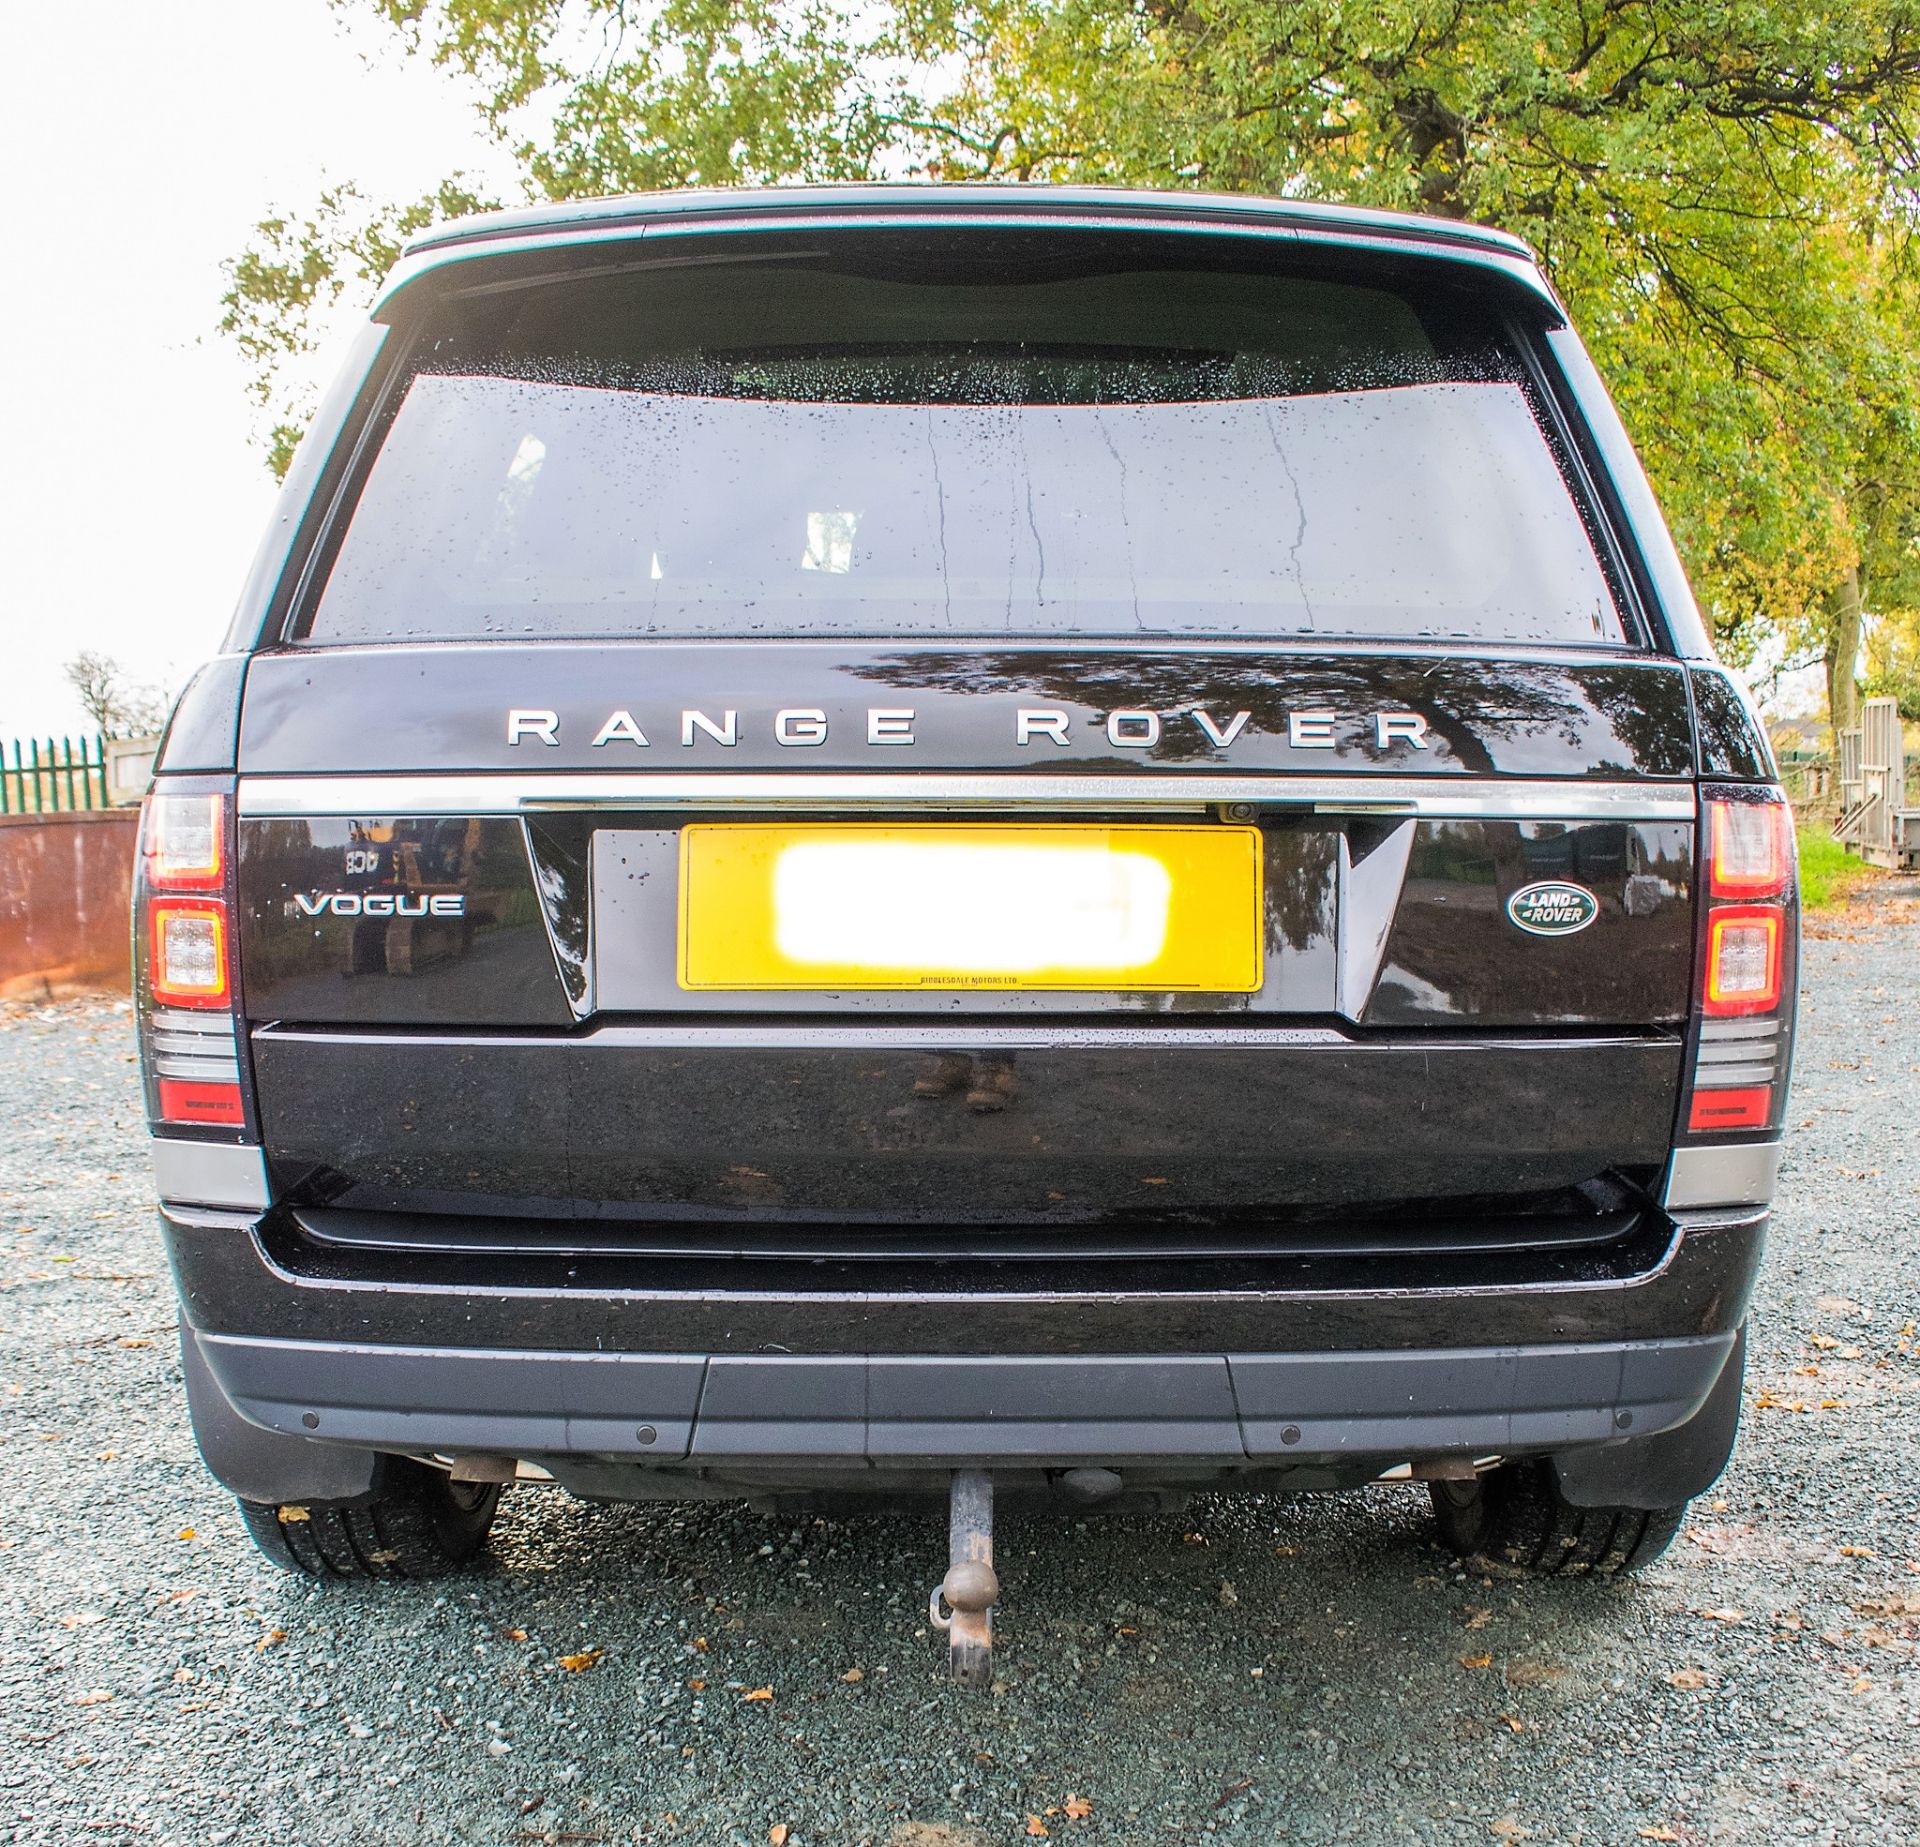 Range Rover Vogue TDV6 diesel automatic 4WD 5 door estate car Registration Number: PE15 MVS Date - Image 6 of 29